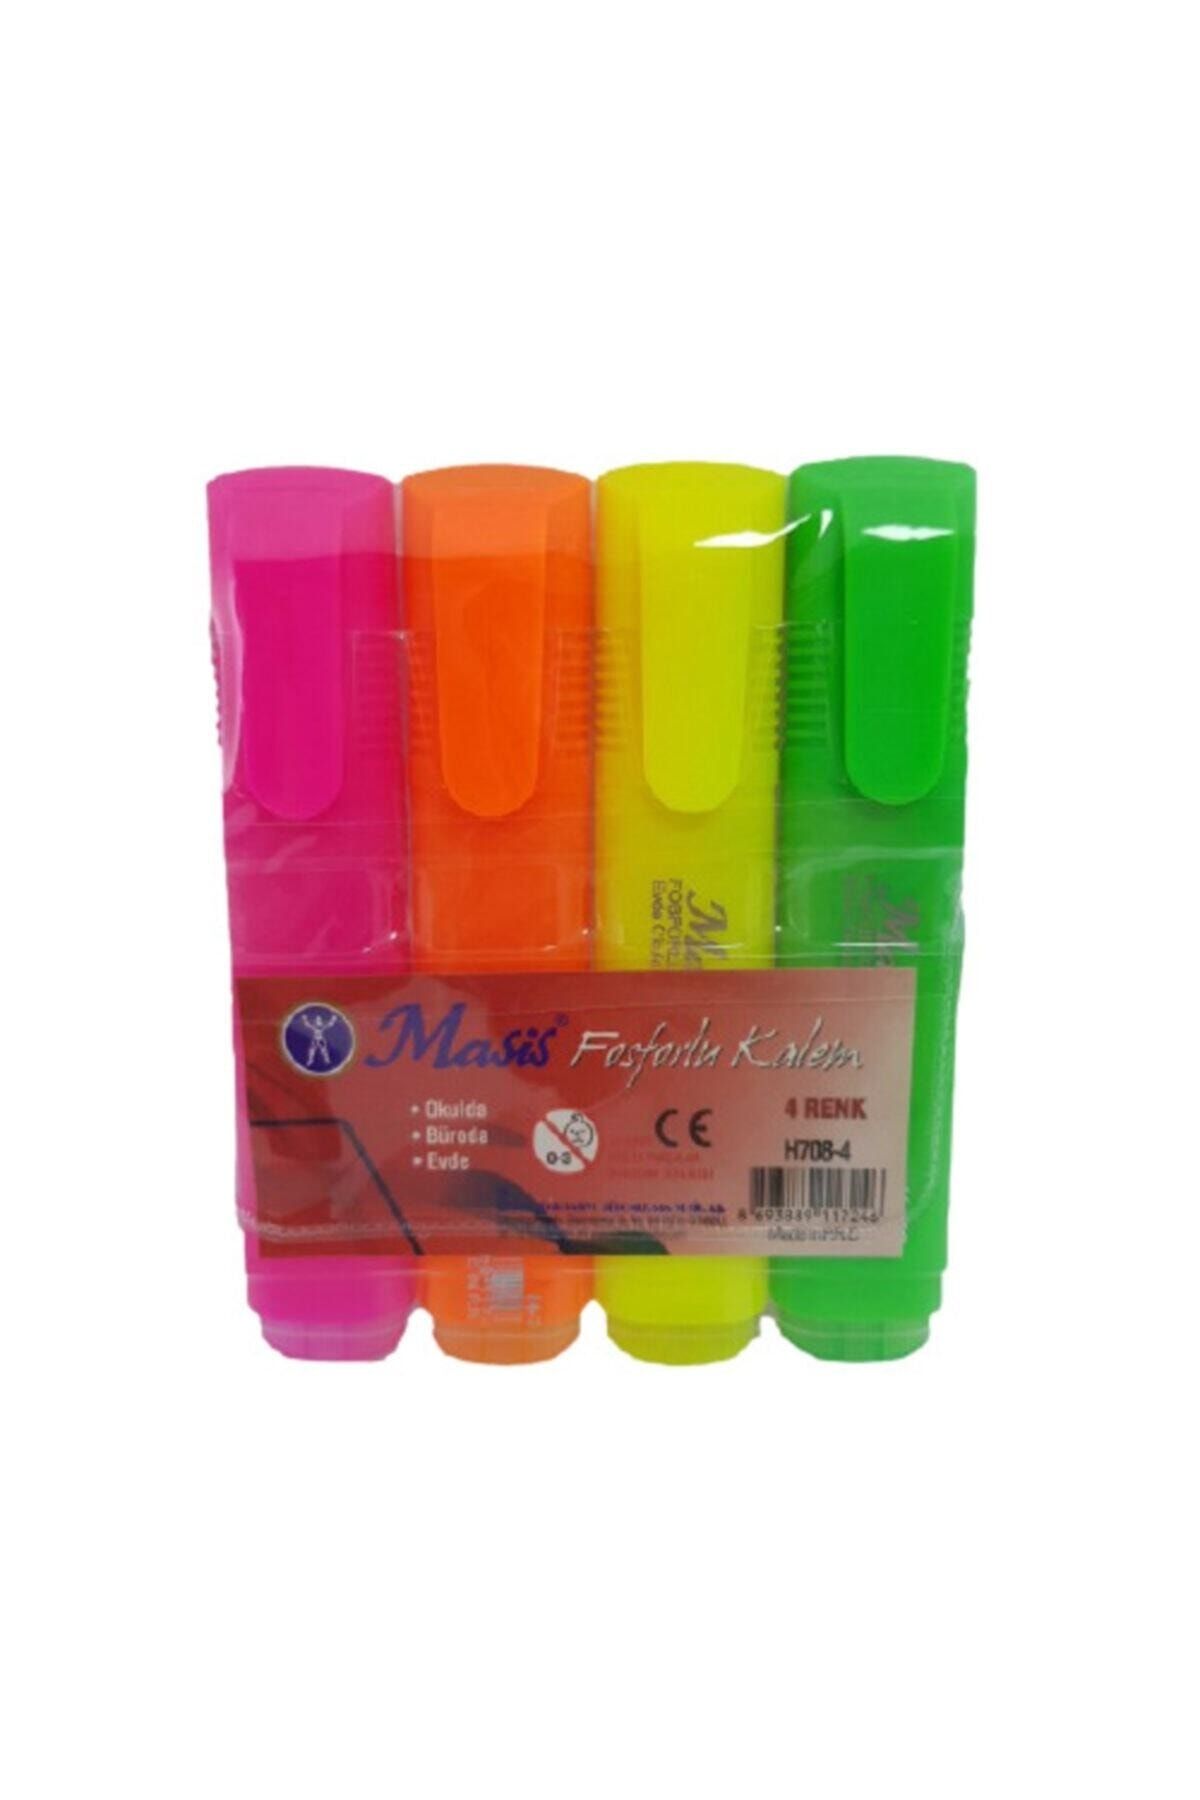 Masis Fosforlu Kalem 4 Renk Takım